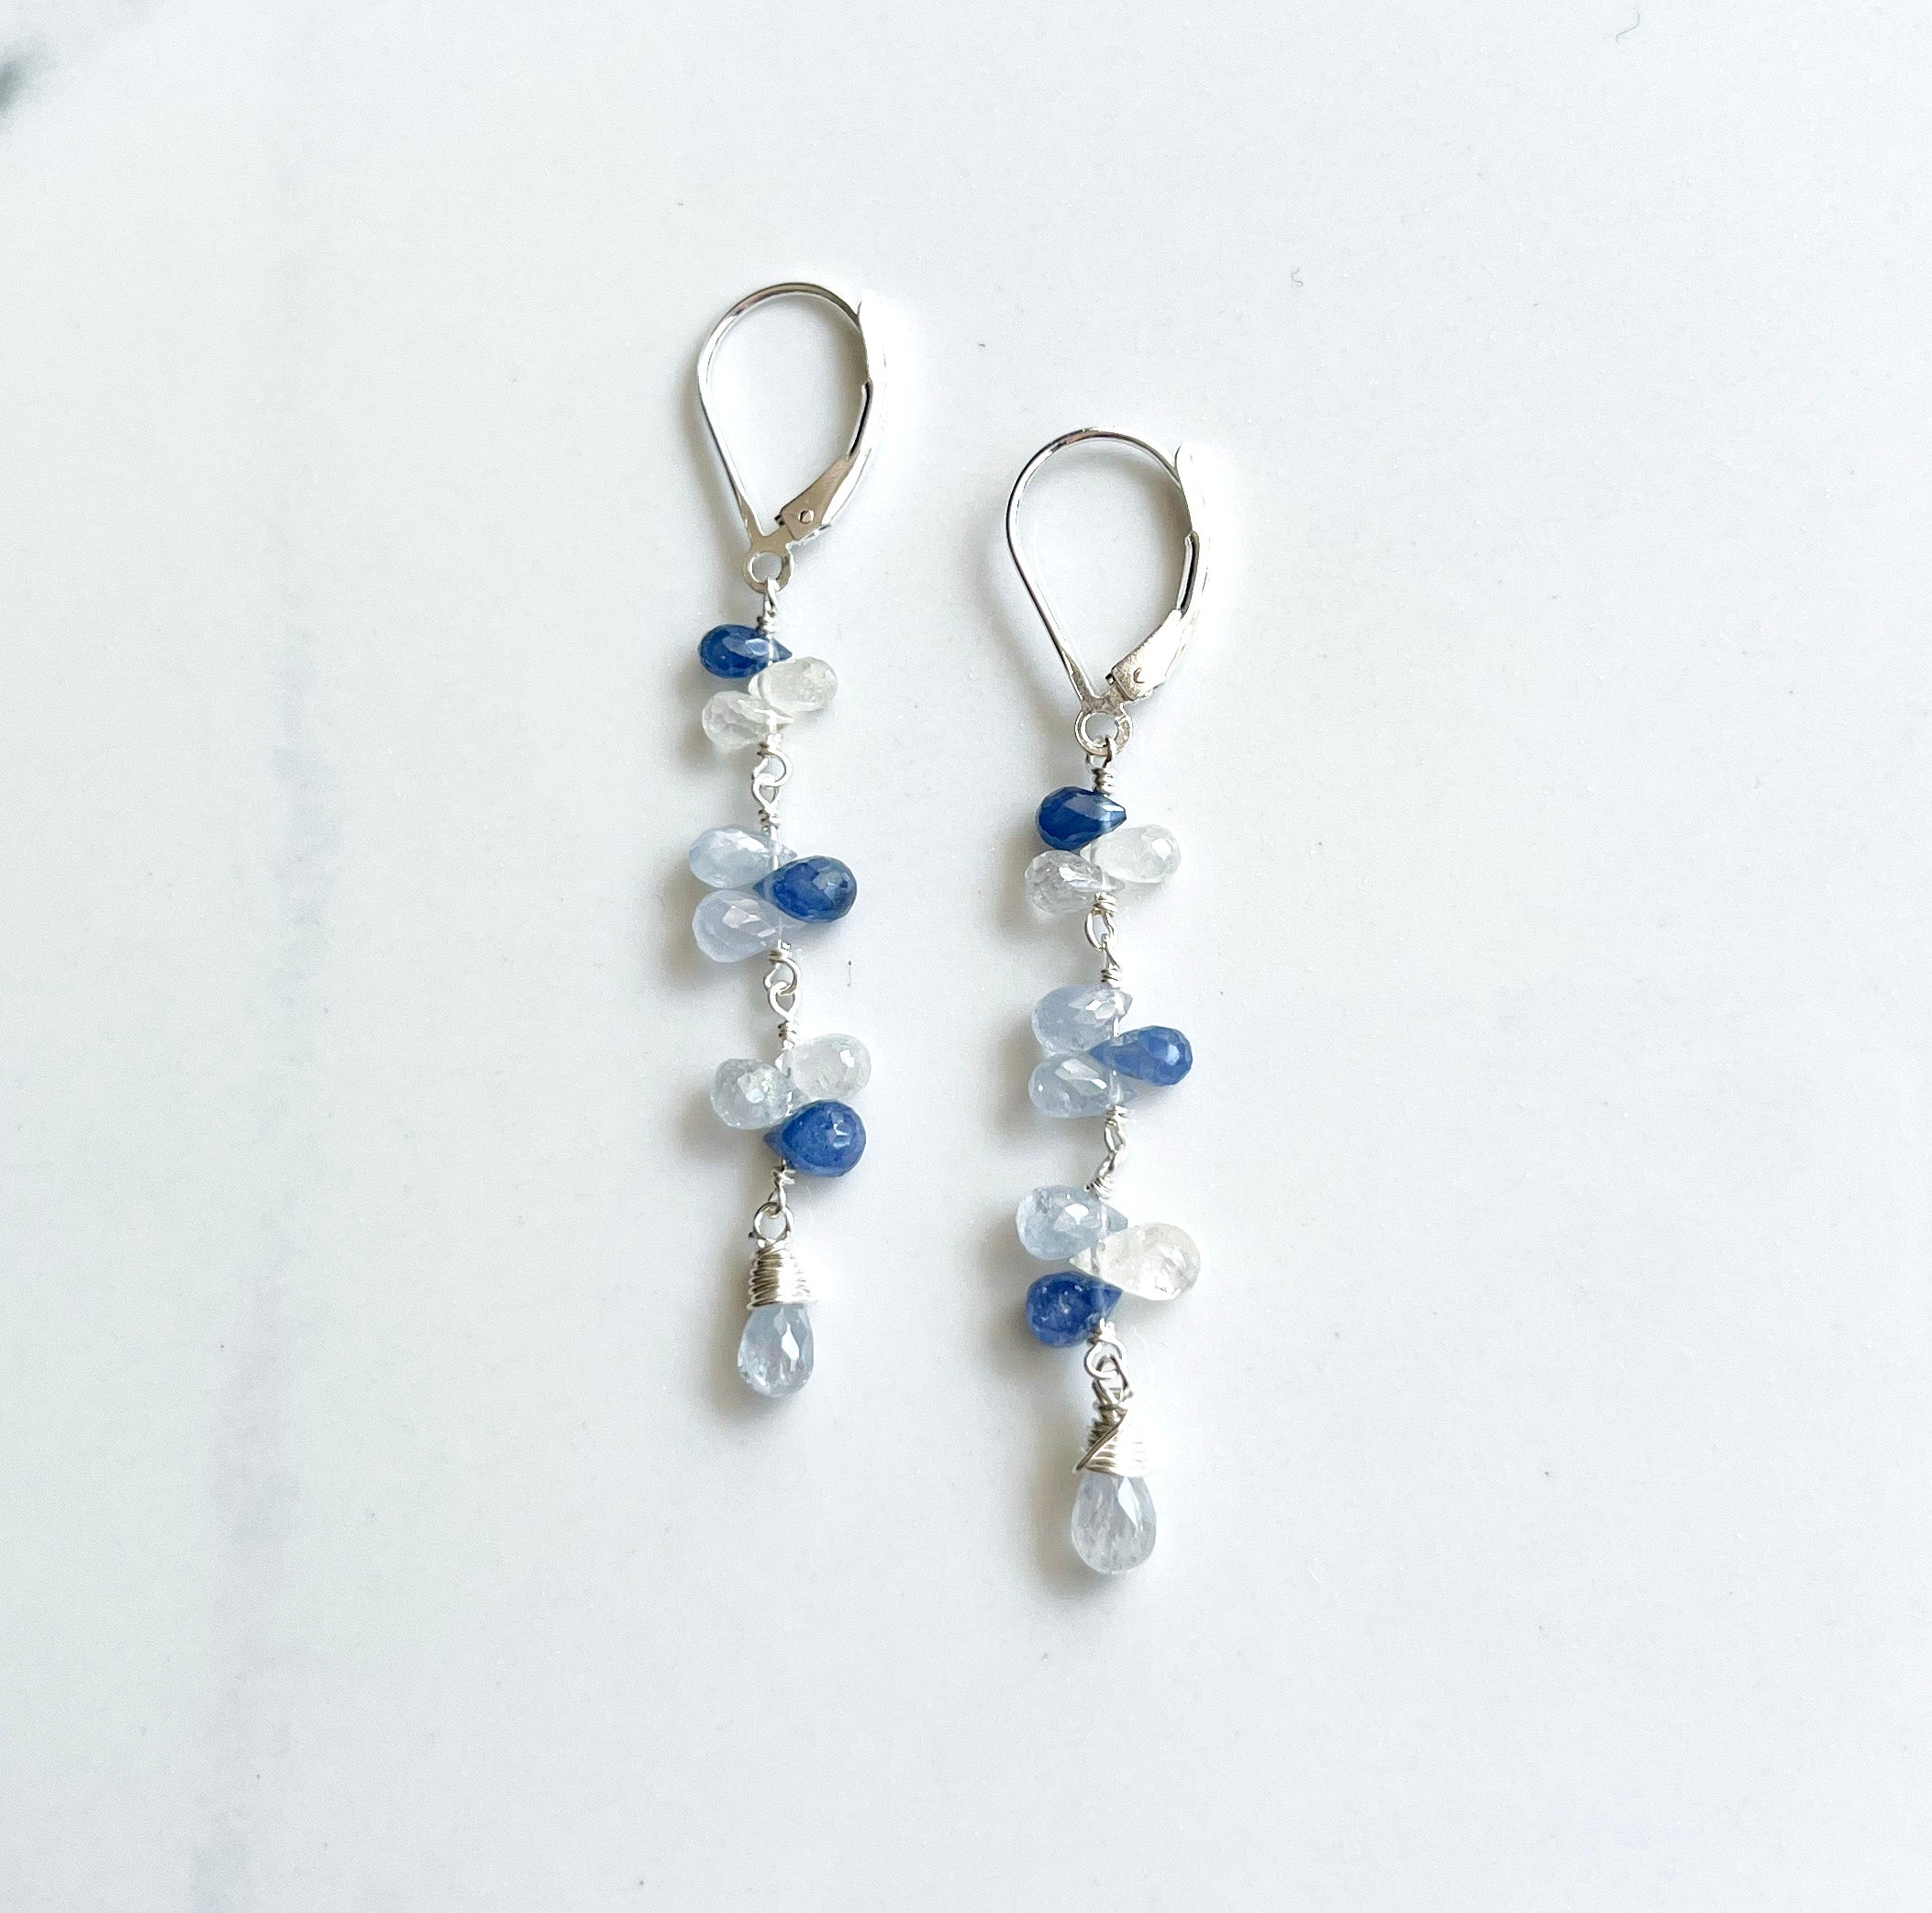 Assorted drops earrings - silver